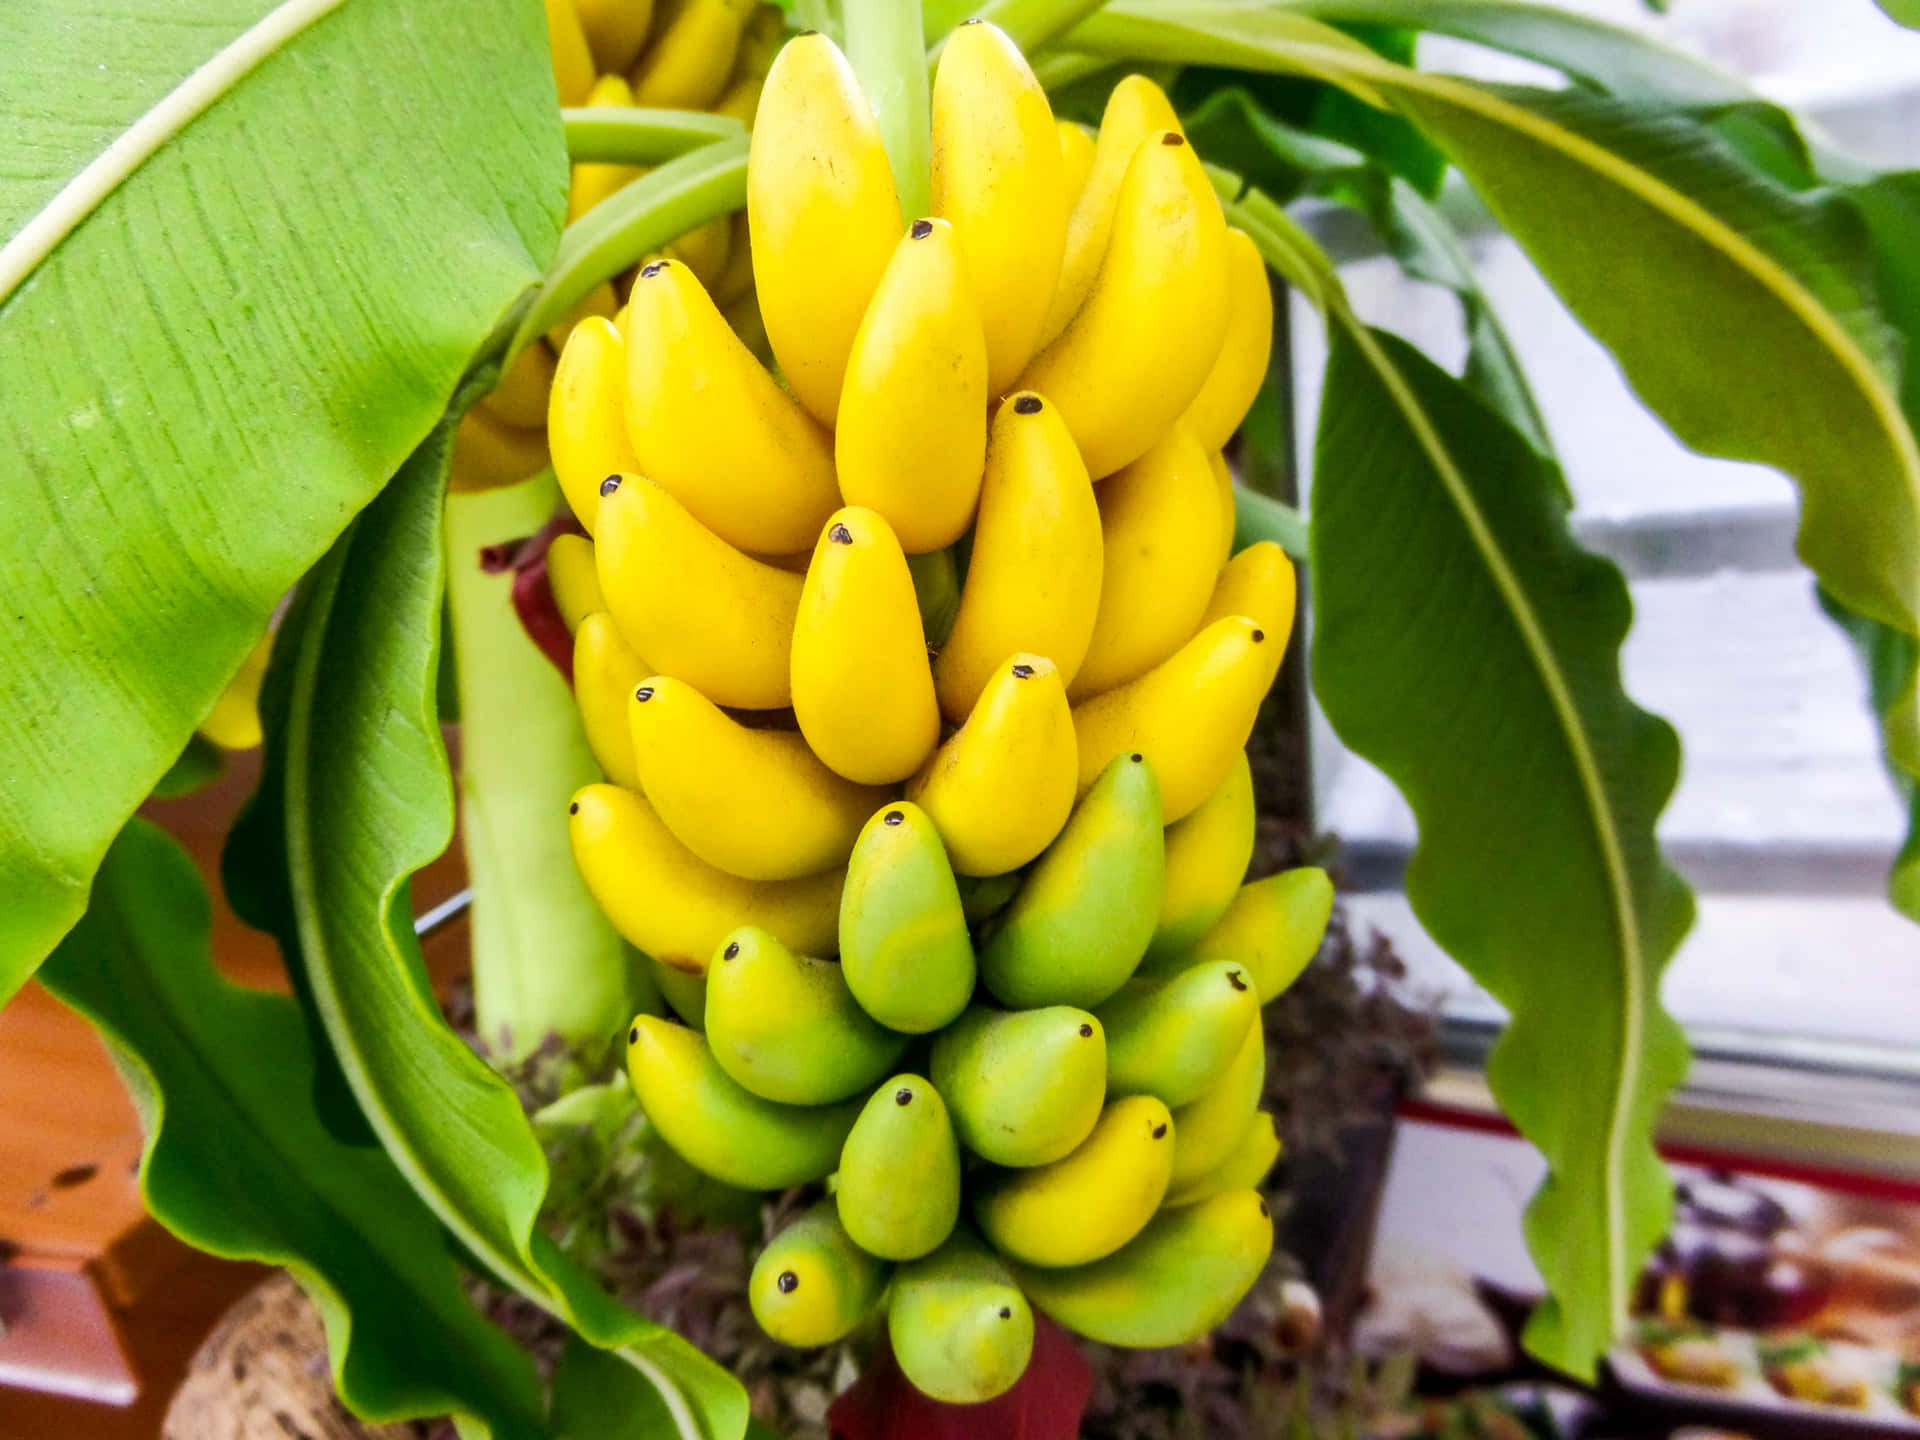 "Serene Scene of a Banana Tree among a Lush Tropical Landscape"